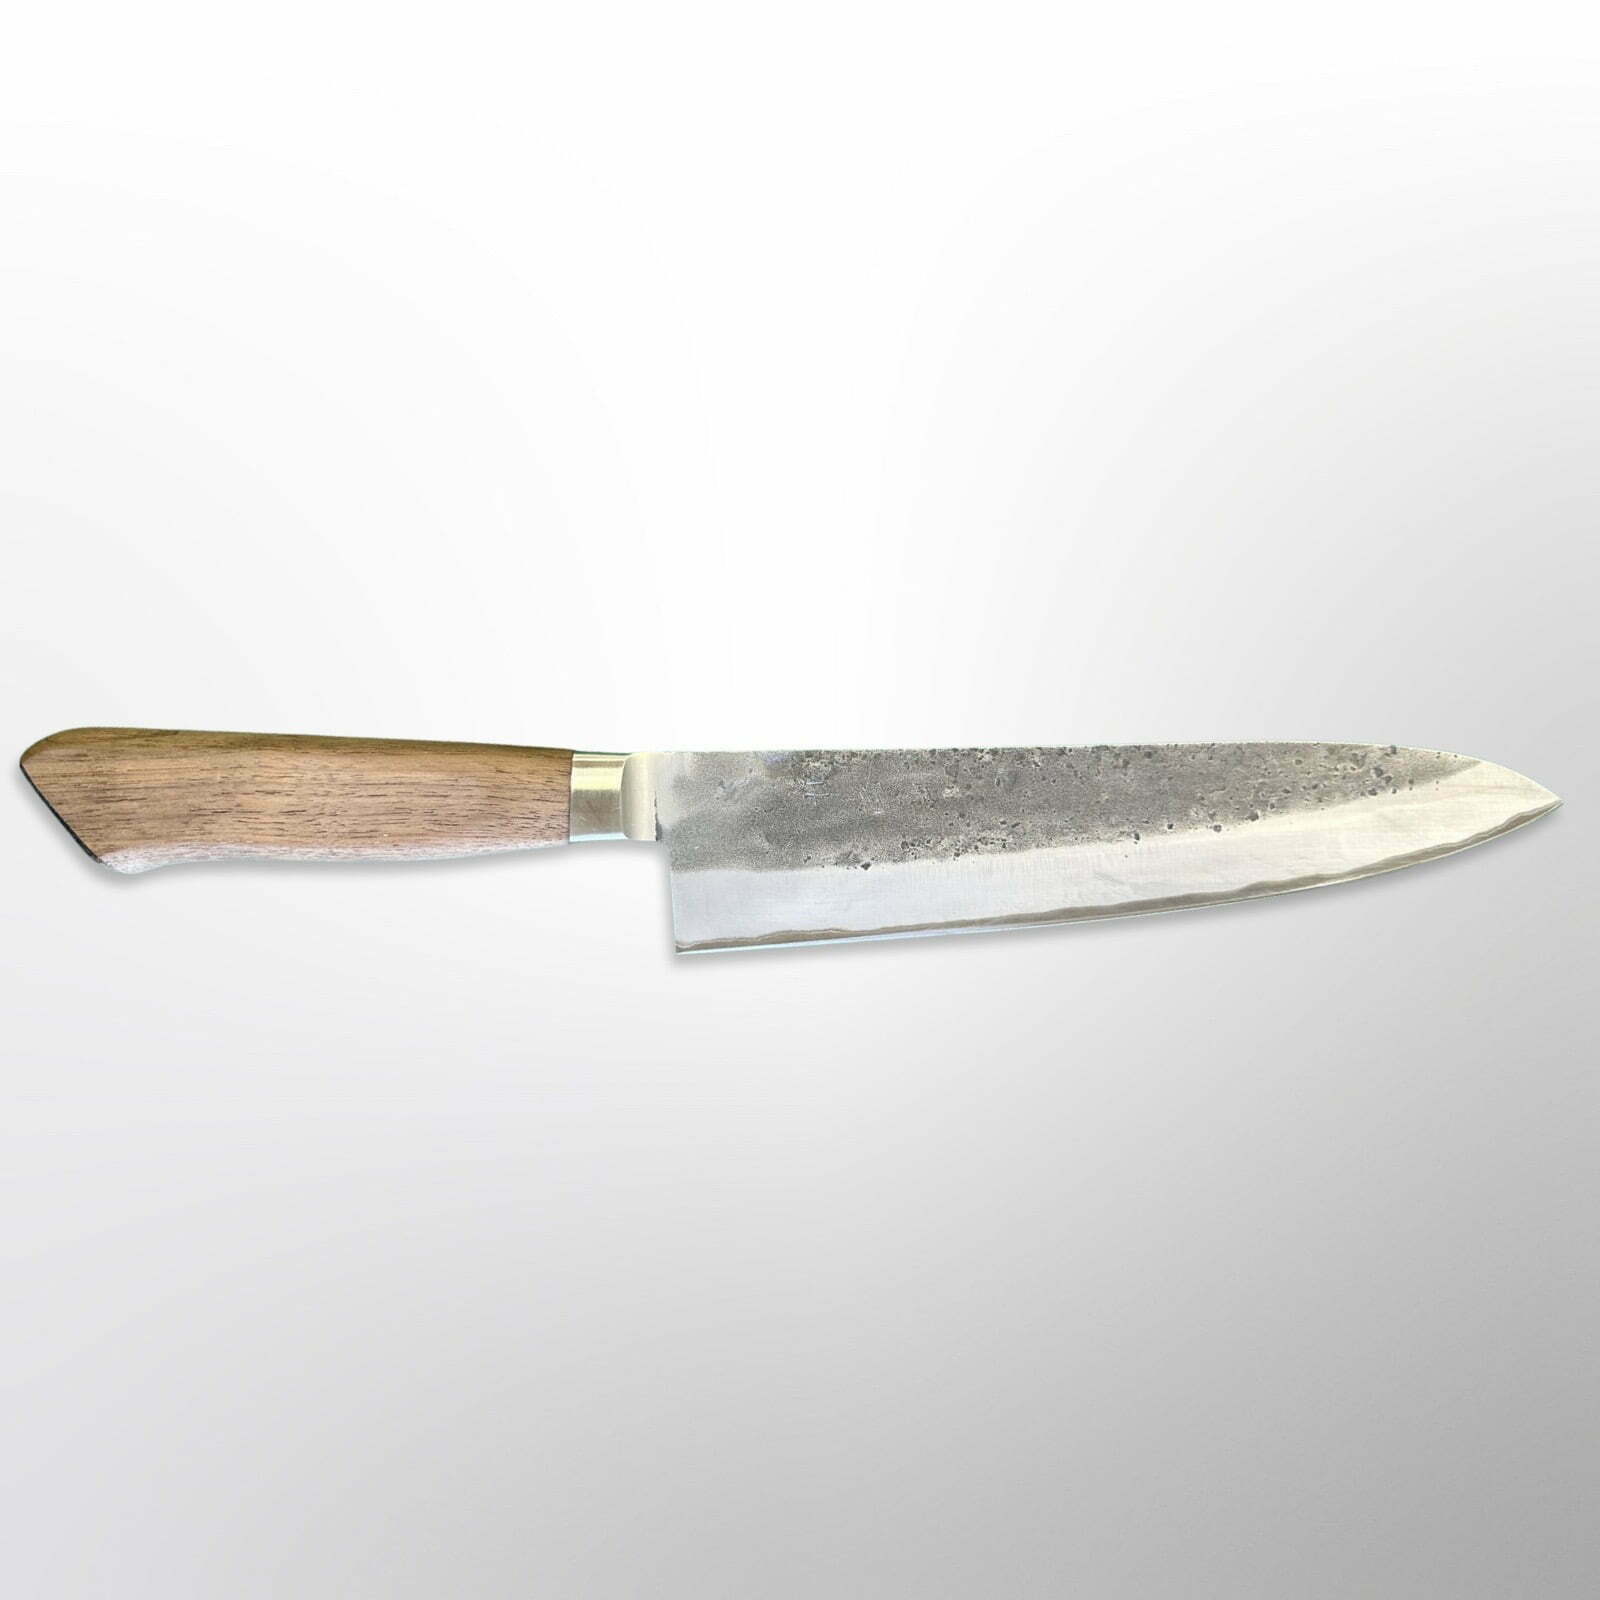  סכין שף רב-תכליתית גיוטו 210מ״מ מחוזקת 3 שכבות: פלדת פחמן יפנית אוגמי2 עטופה פלדת אל-חלד גימור נשיג׳י טדאפוסה יפן